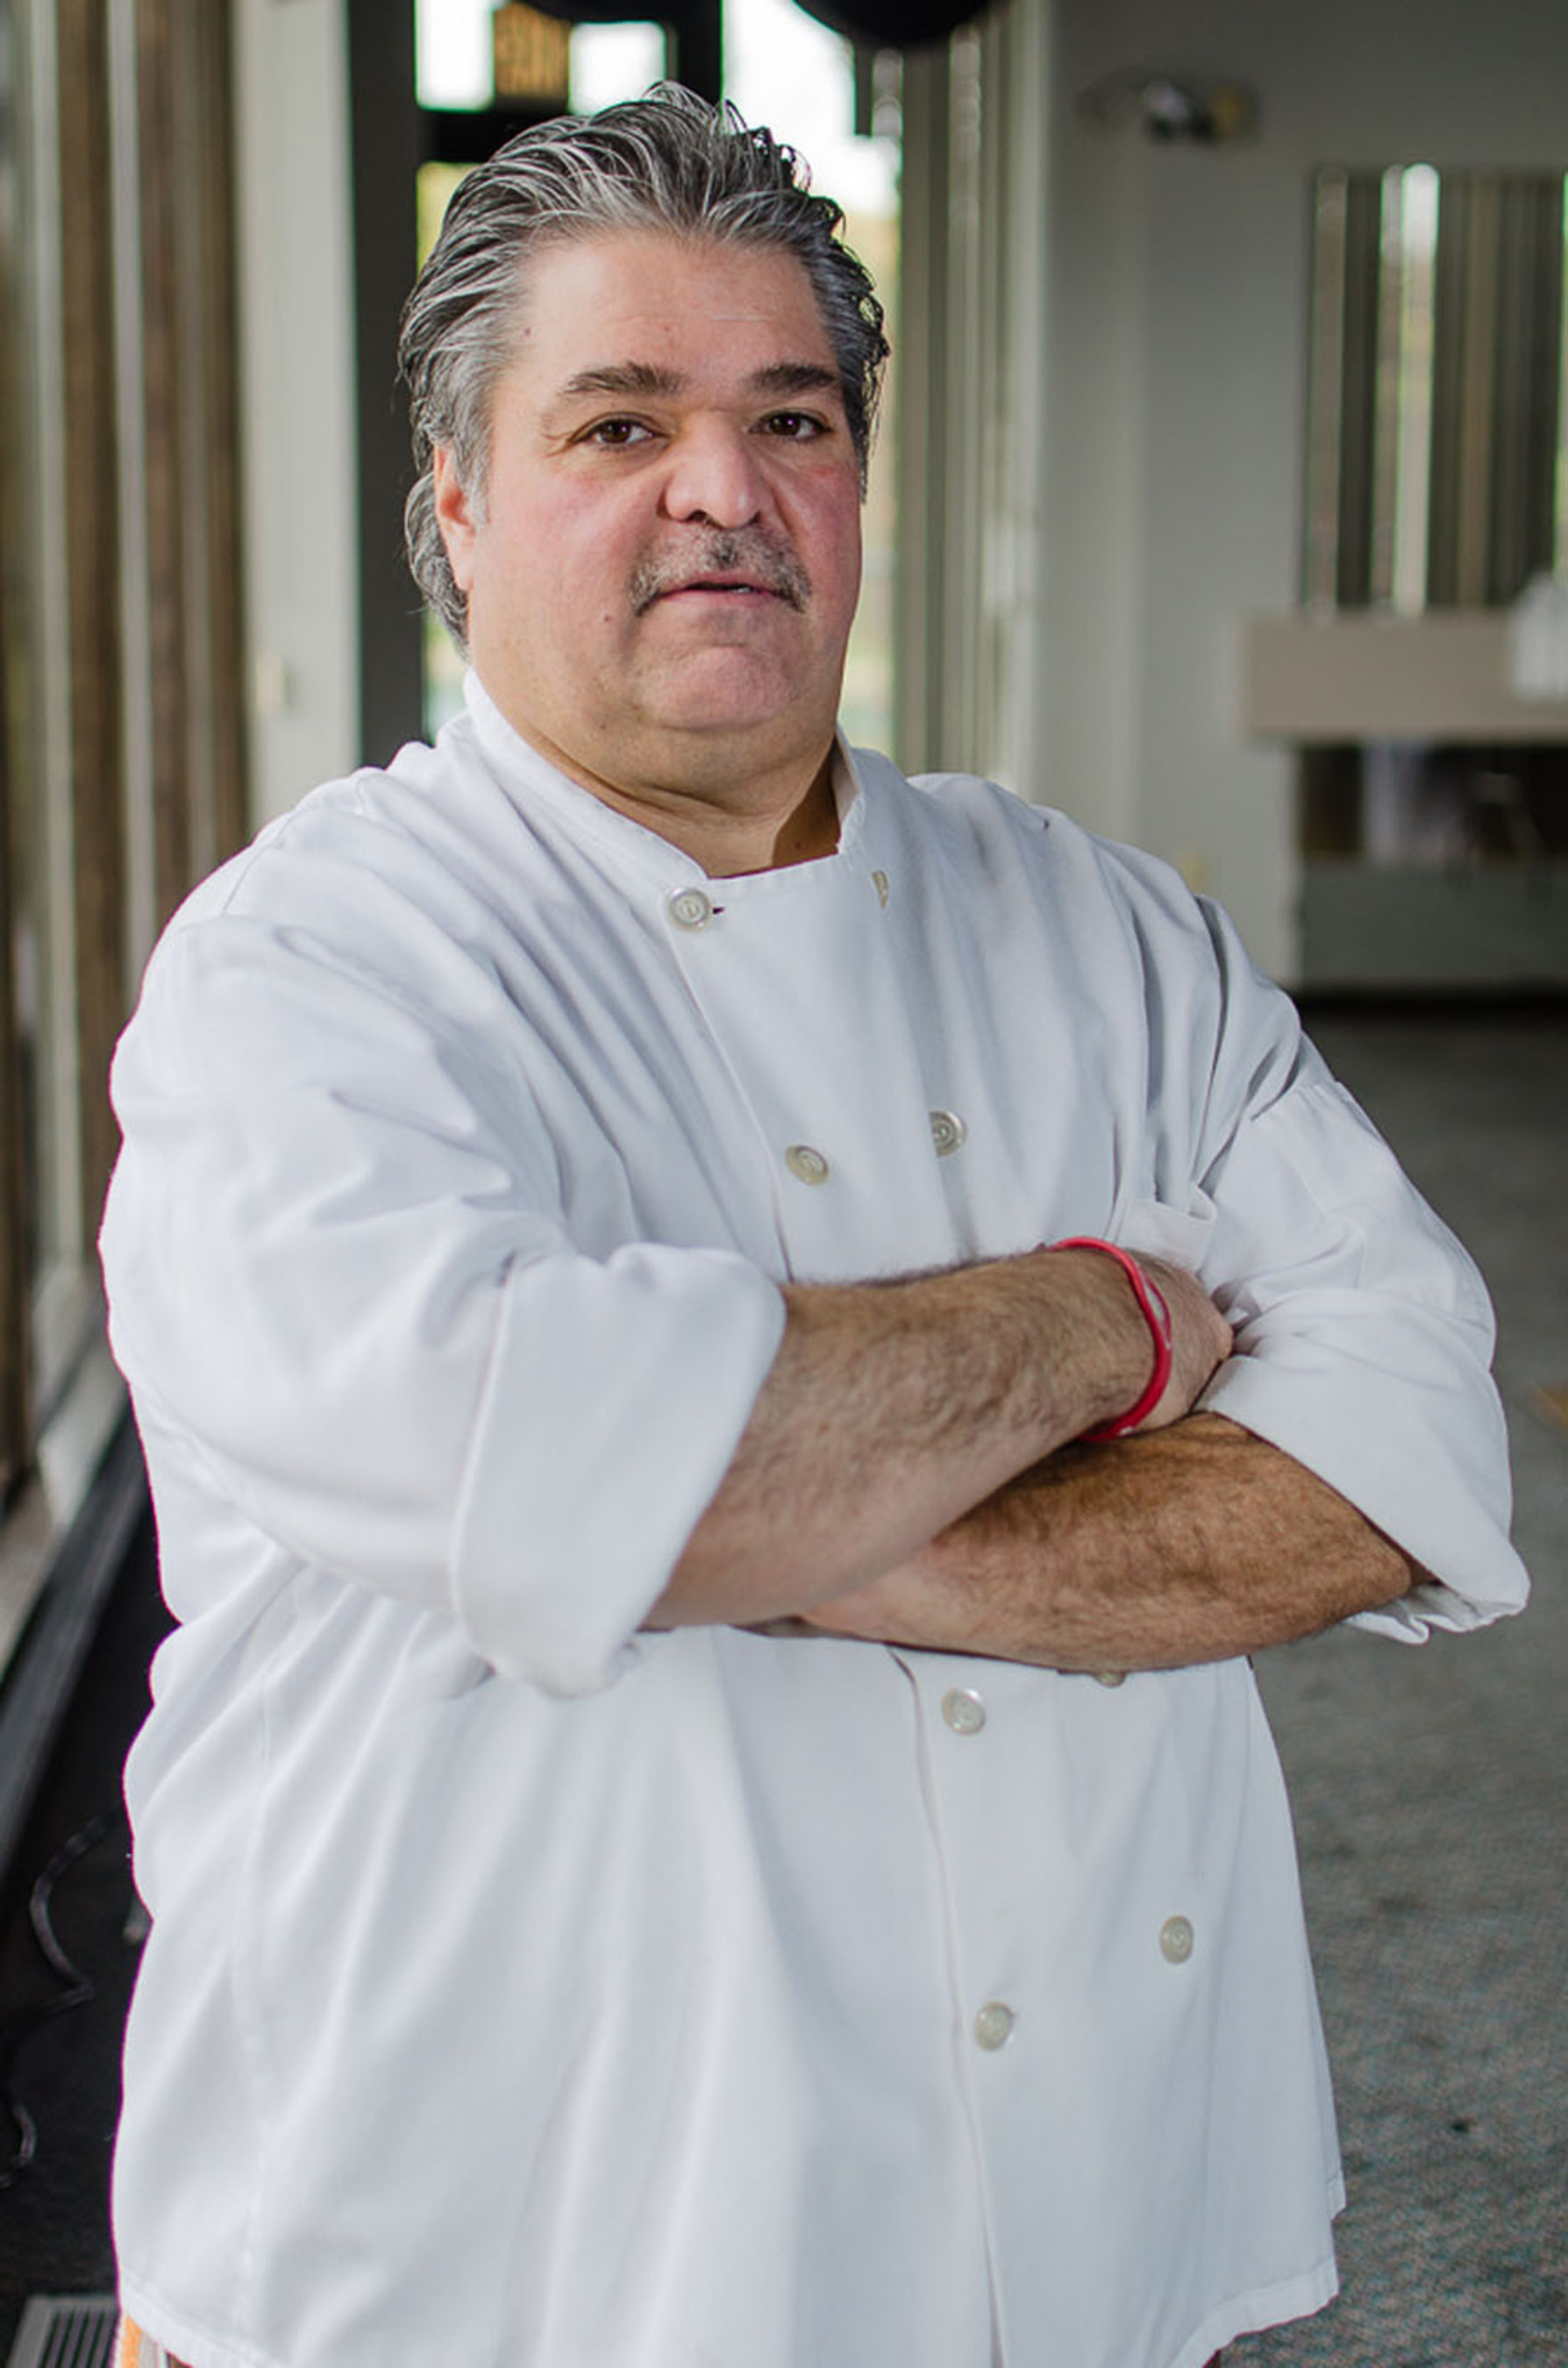 Chef Rich Mancini. (PRNewsFoto/Chef Rich Mancini) (PRNewsFoto/CHEF RICH MANCINI)